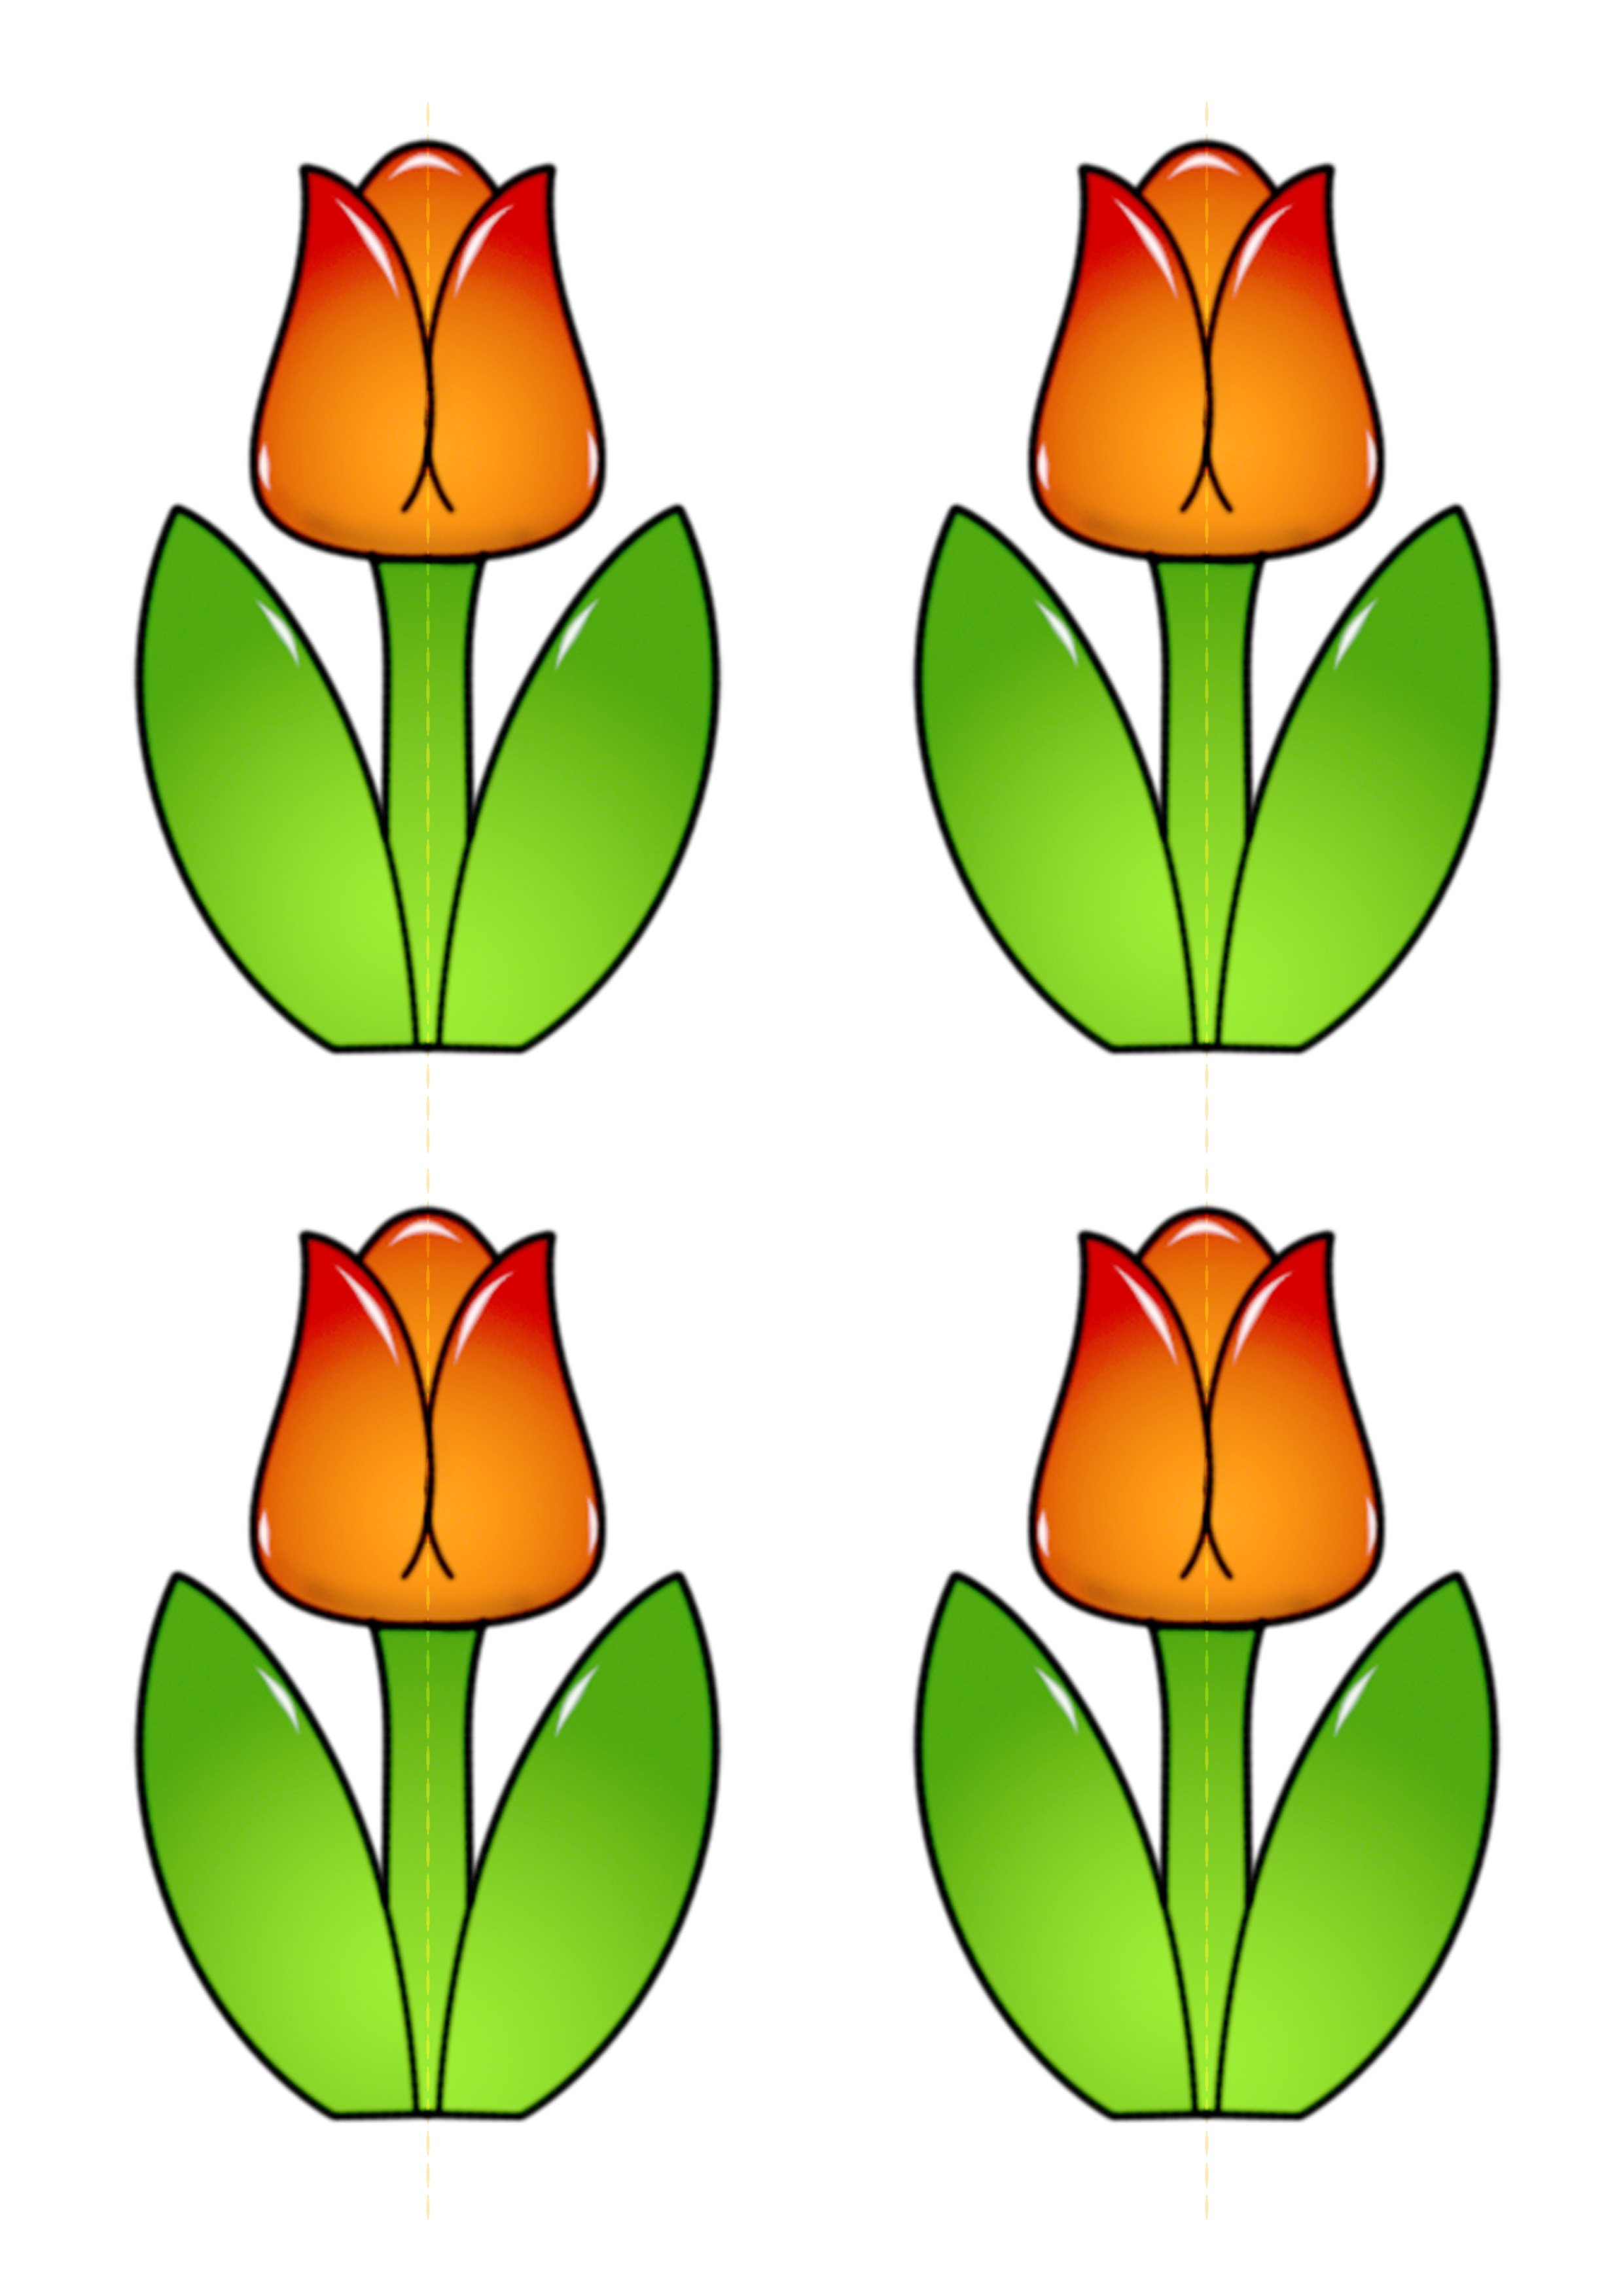 Как создать из цветной бумаги объемный тюльпан пошагово